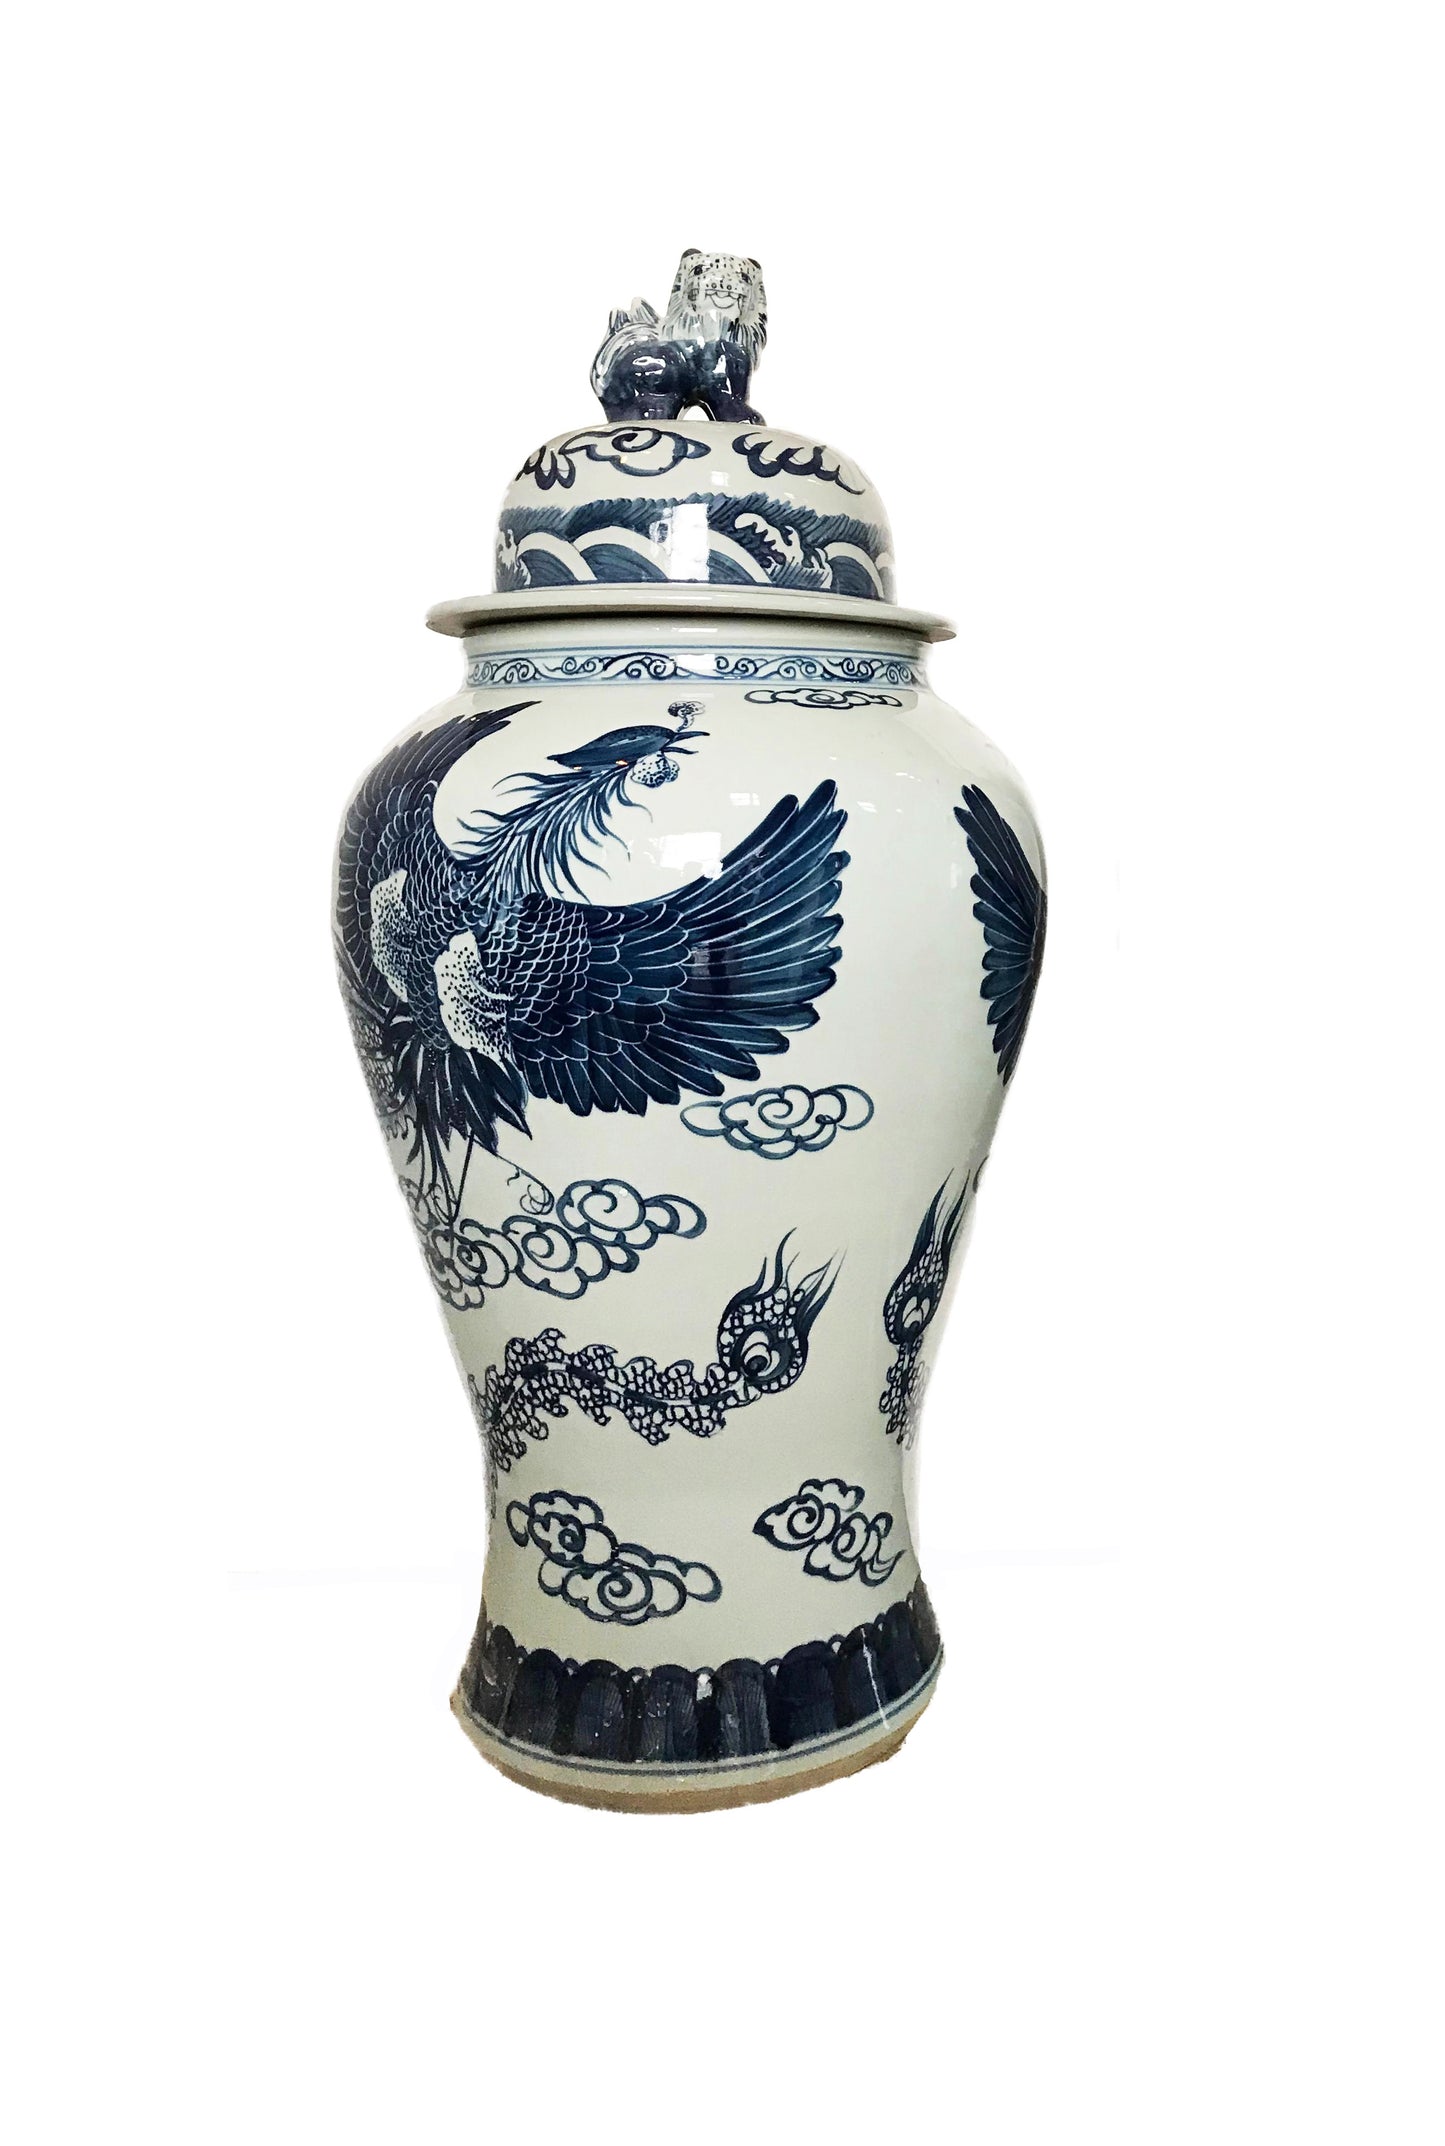 #942 Mansion Size Chinoiserie Blue & White Porcelain Ginger Jar 35" H